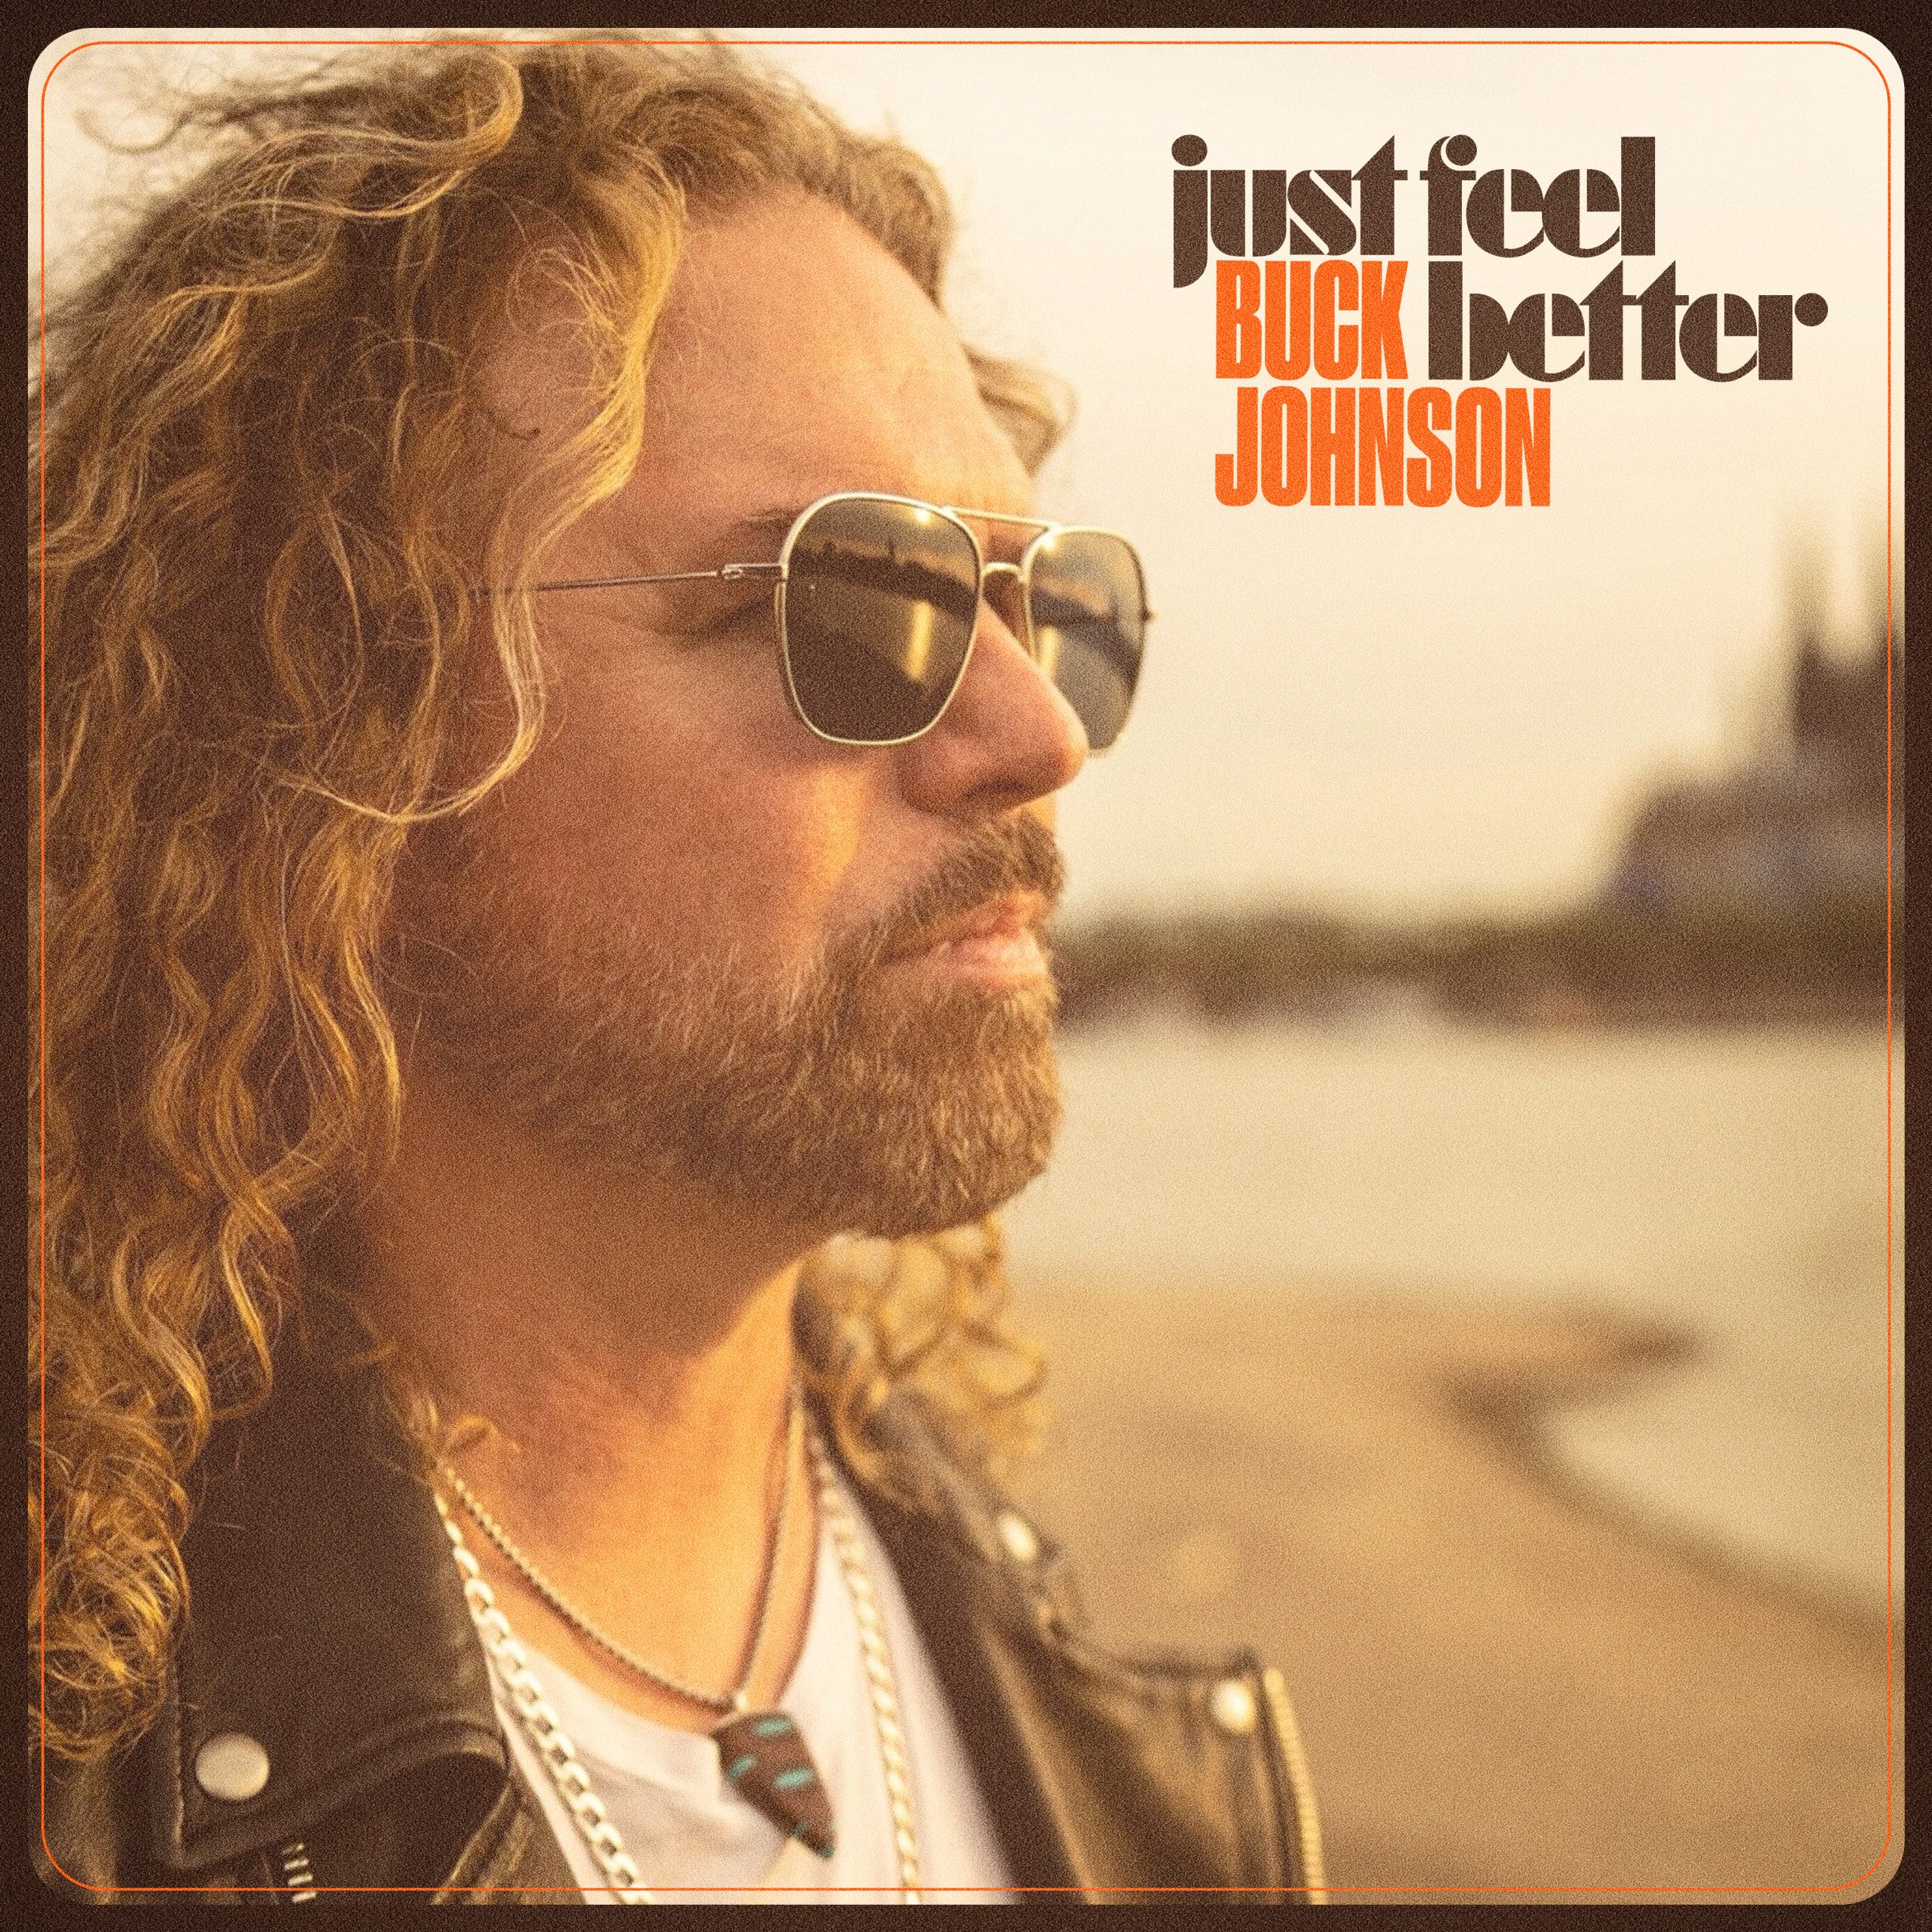 Buck-Johnson-Just-Feel-Better-01.16.24-FINAL-scaled.jpg